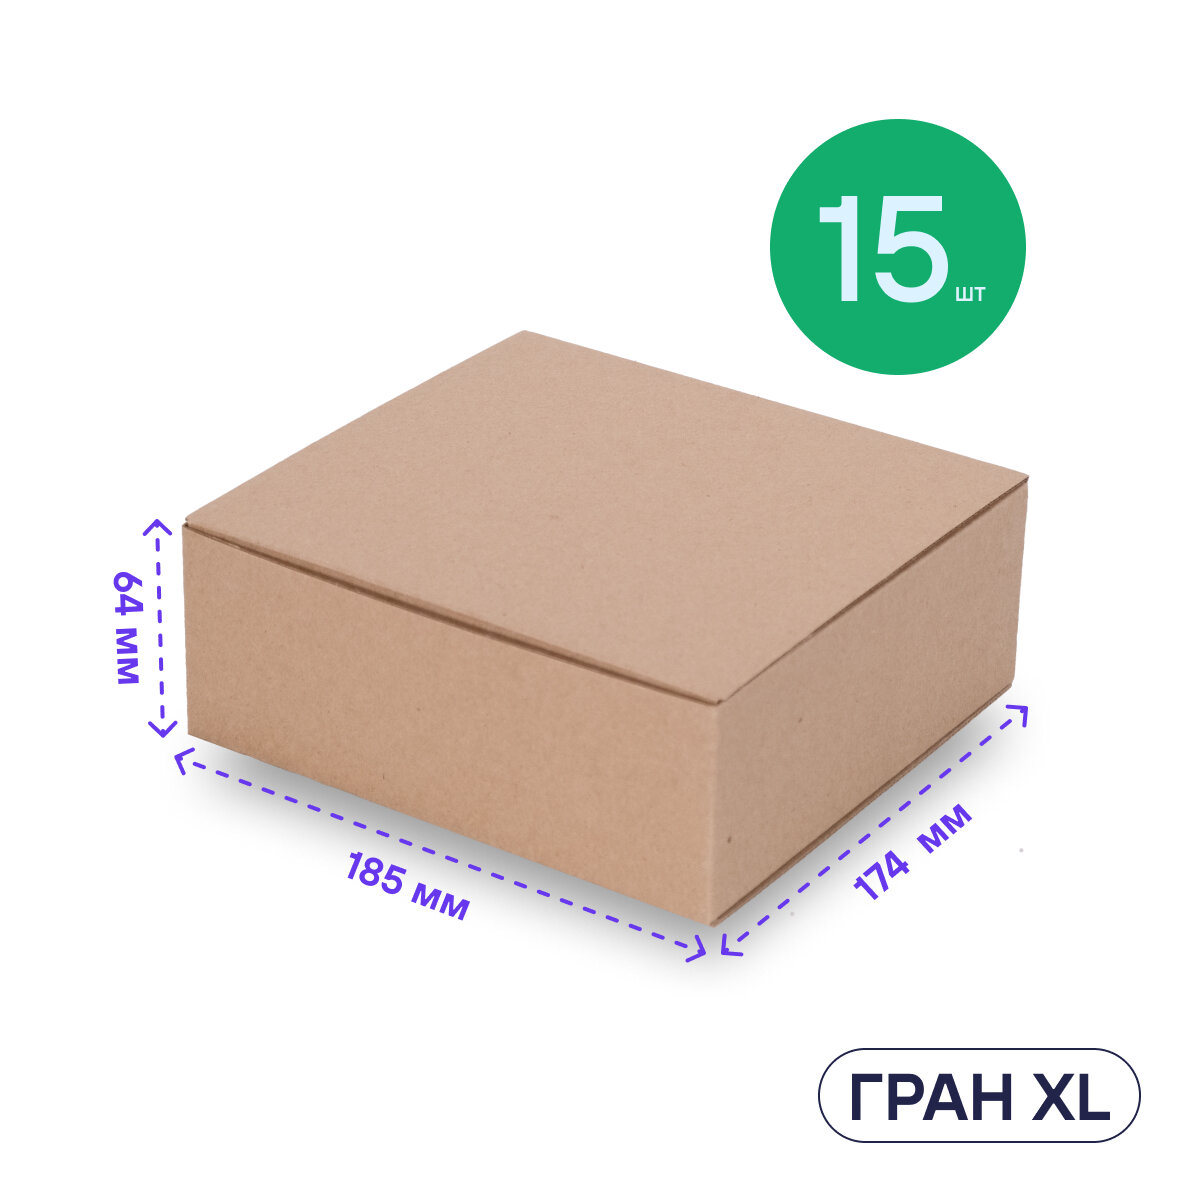 Коробка подарочная большая BOXY гран XL, набор, гофрокартон, 18,5х17,5х6,5 см, 15 шт.